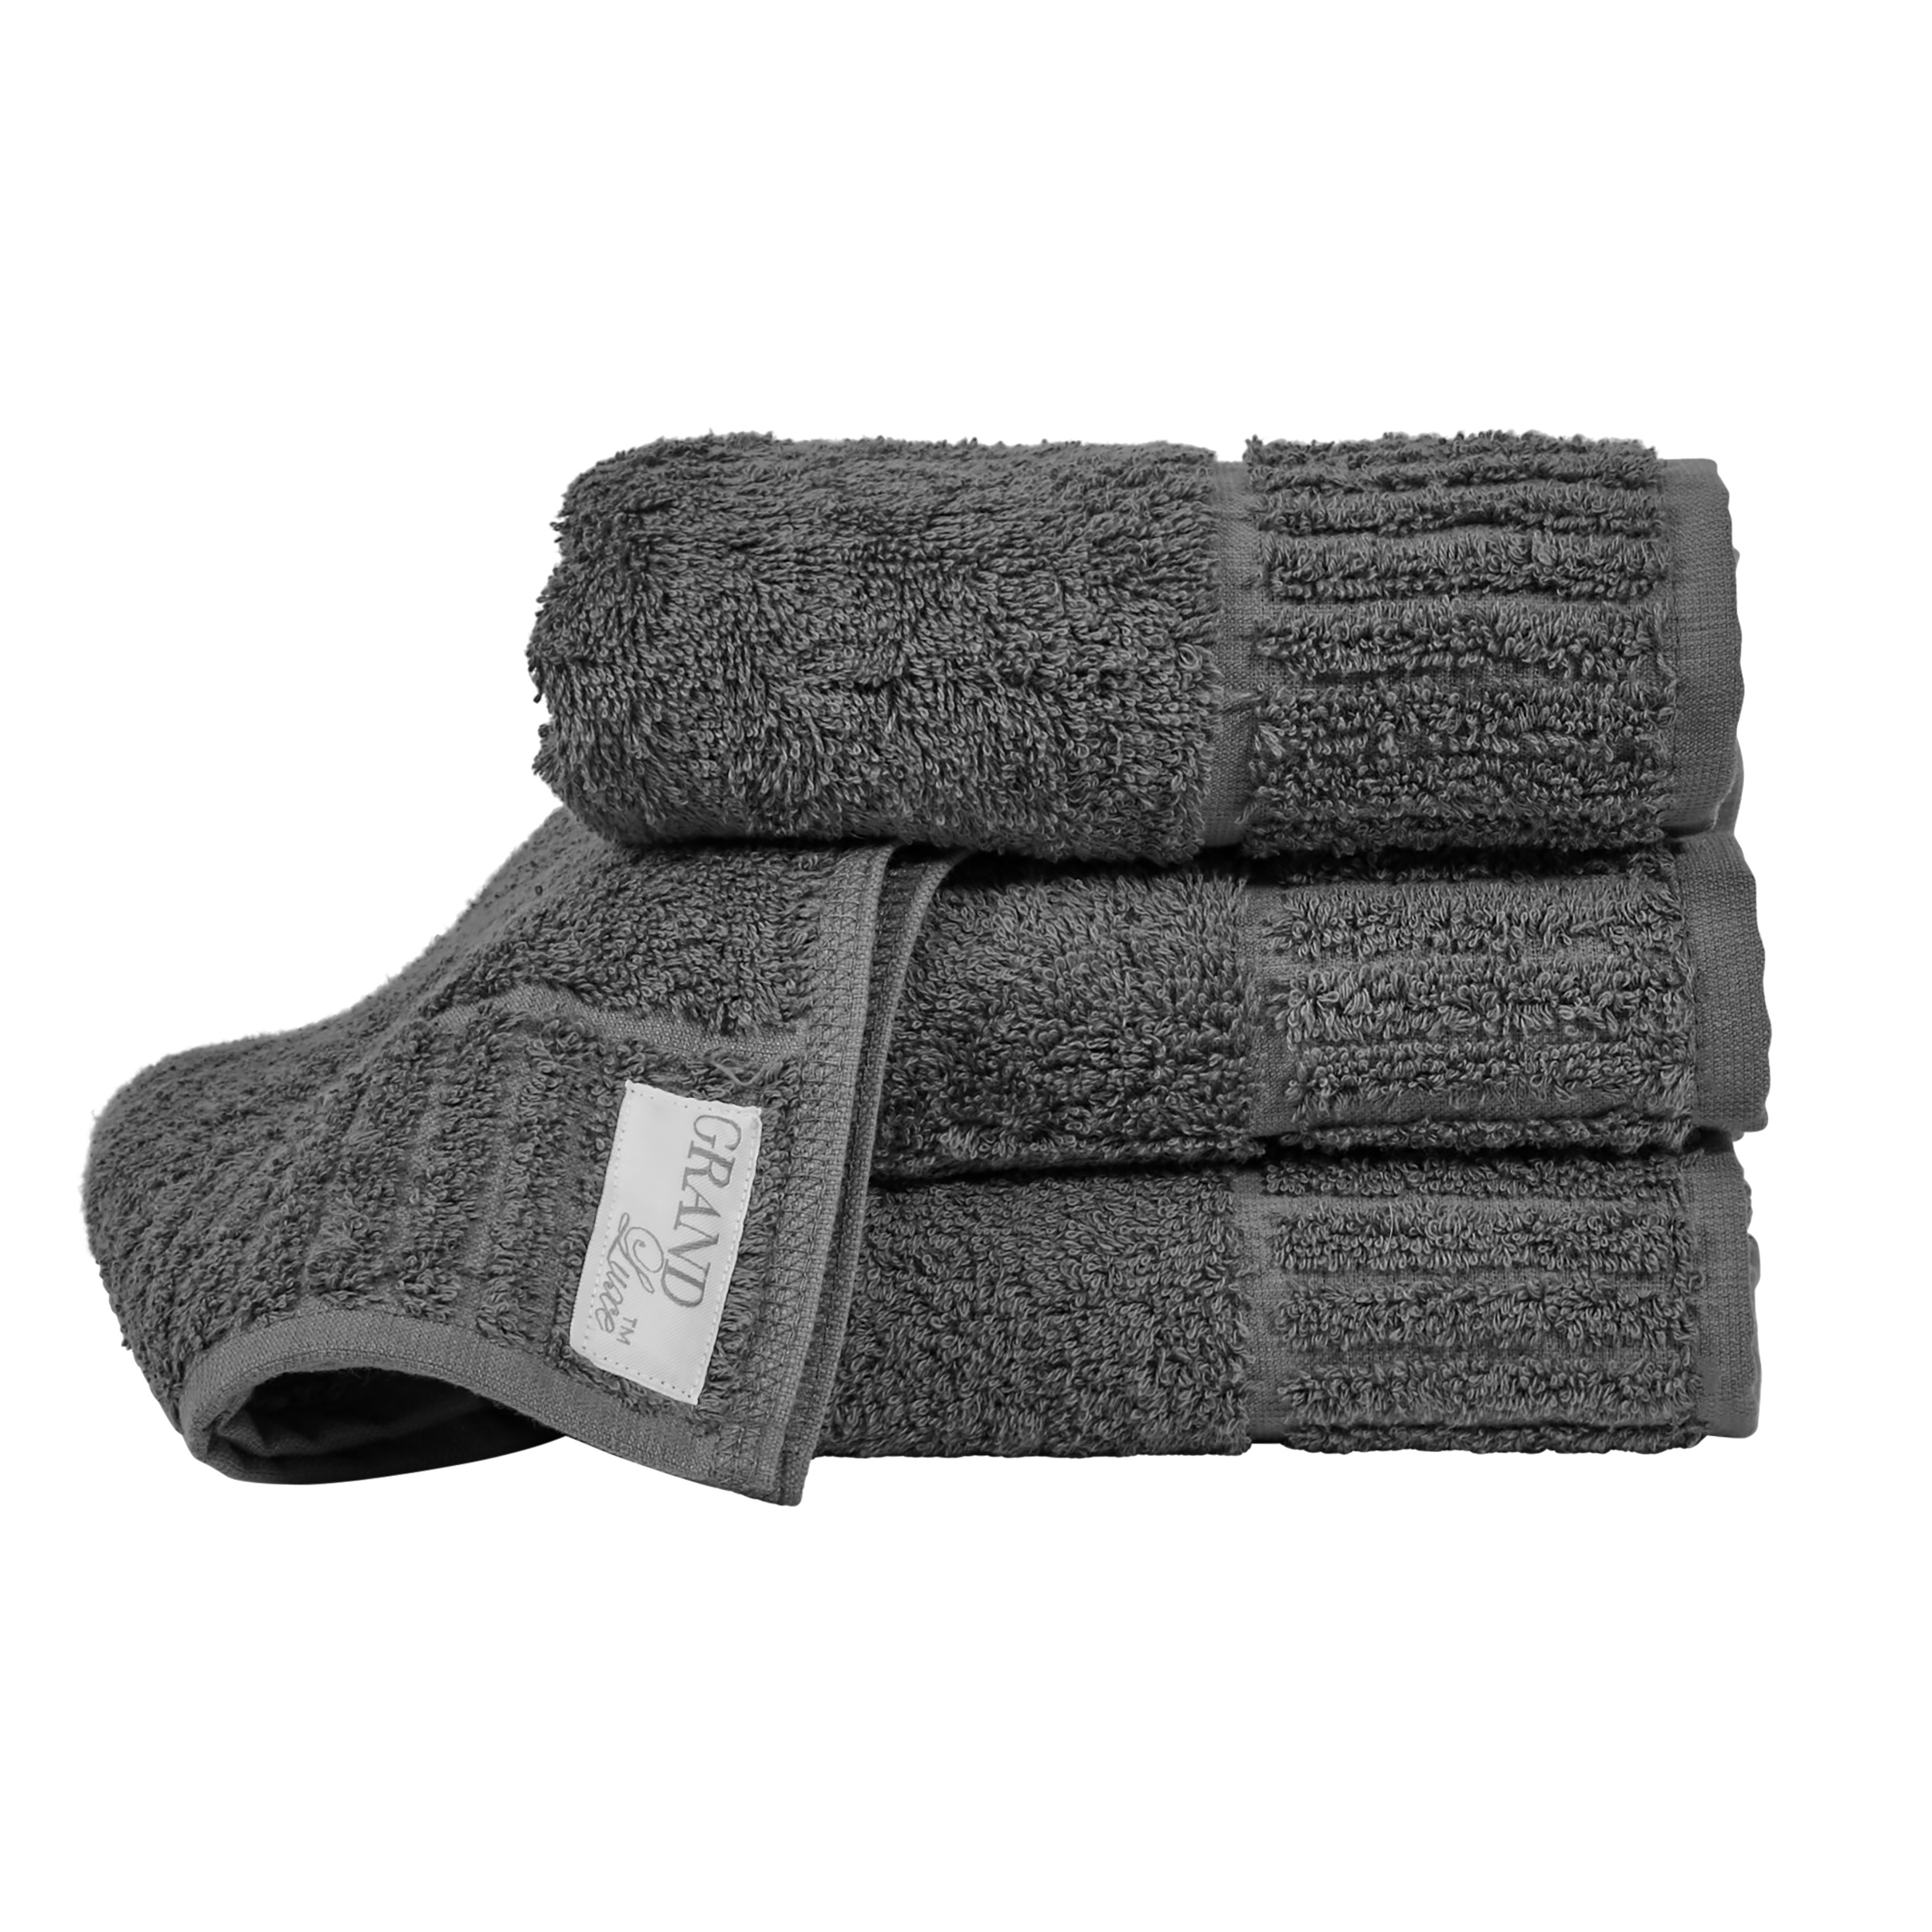 Towel Grand Luxe Kashmir Gray 50x70 cm 500 g